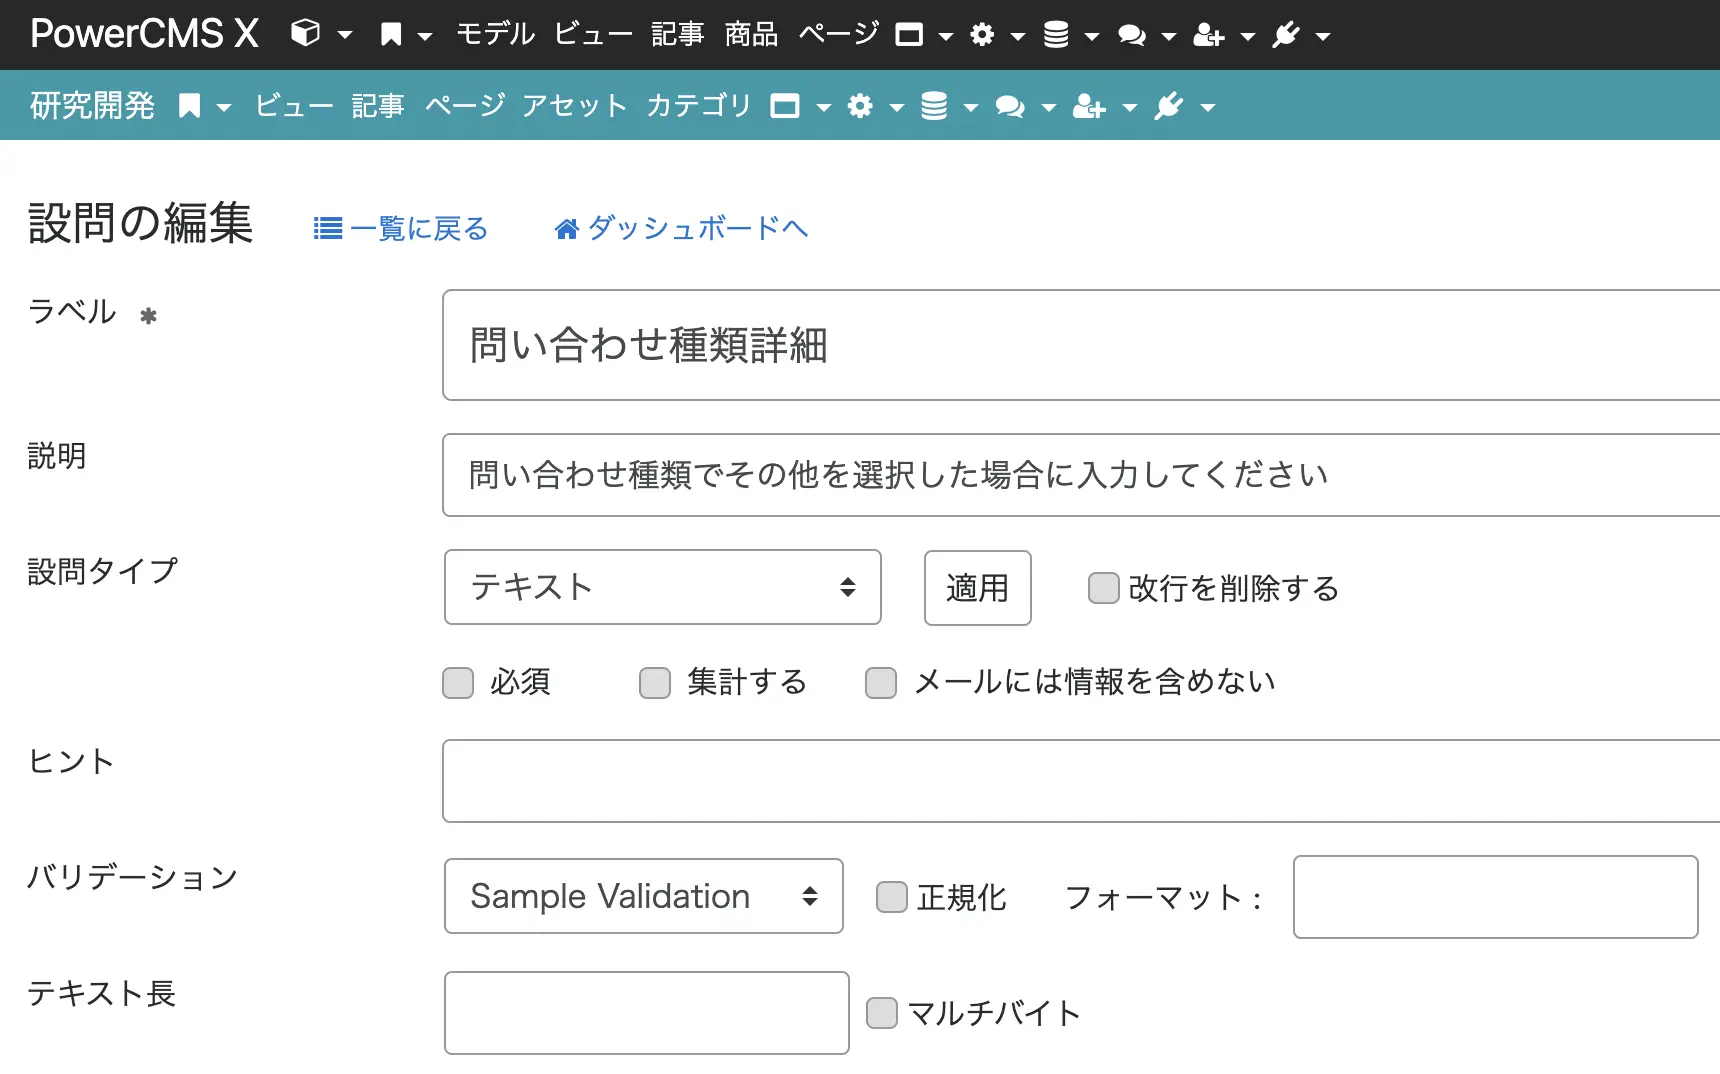 画面キャプチャ：設問「問い合わせ種類詳細」の編集画面。バリデーションにSample Validationを選択している。